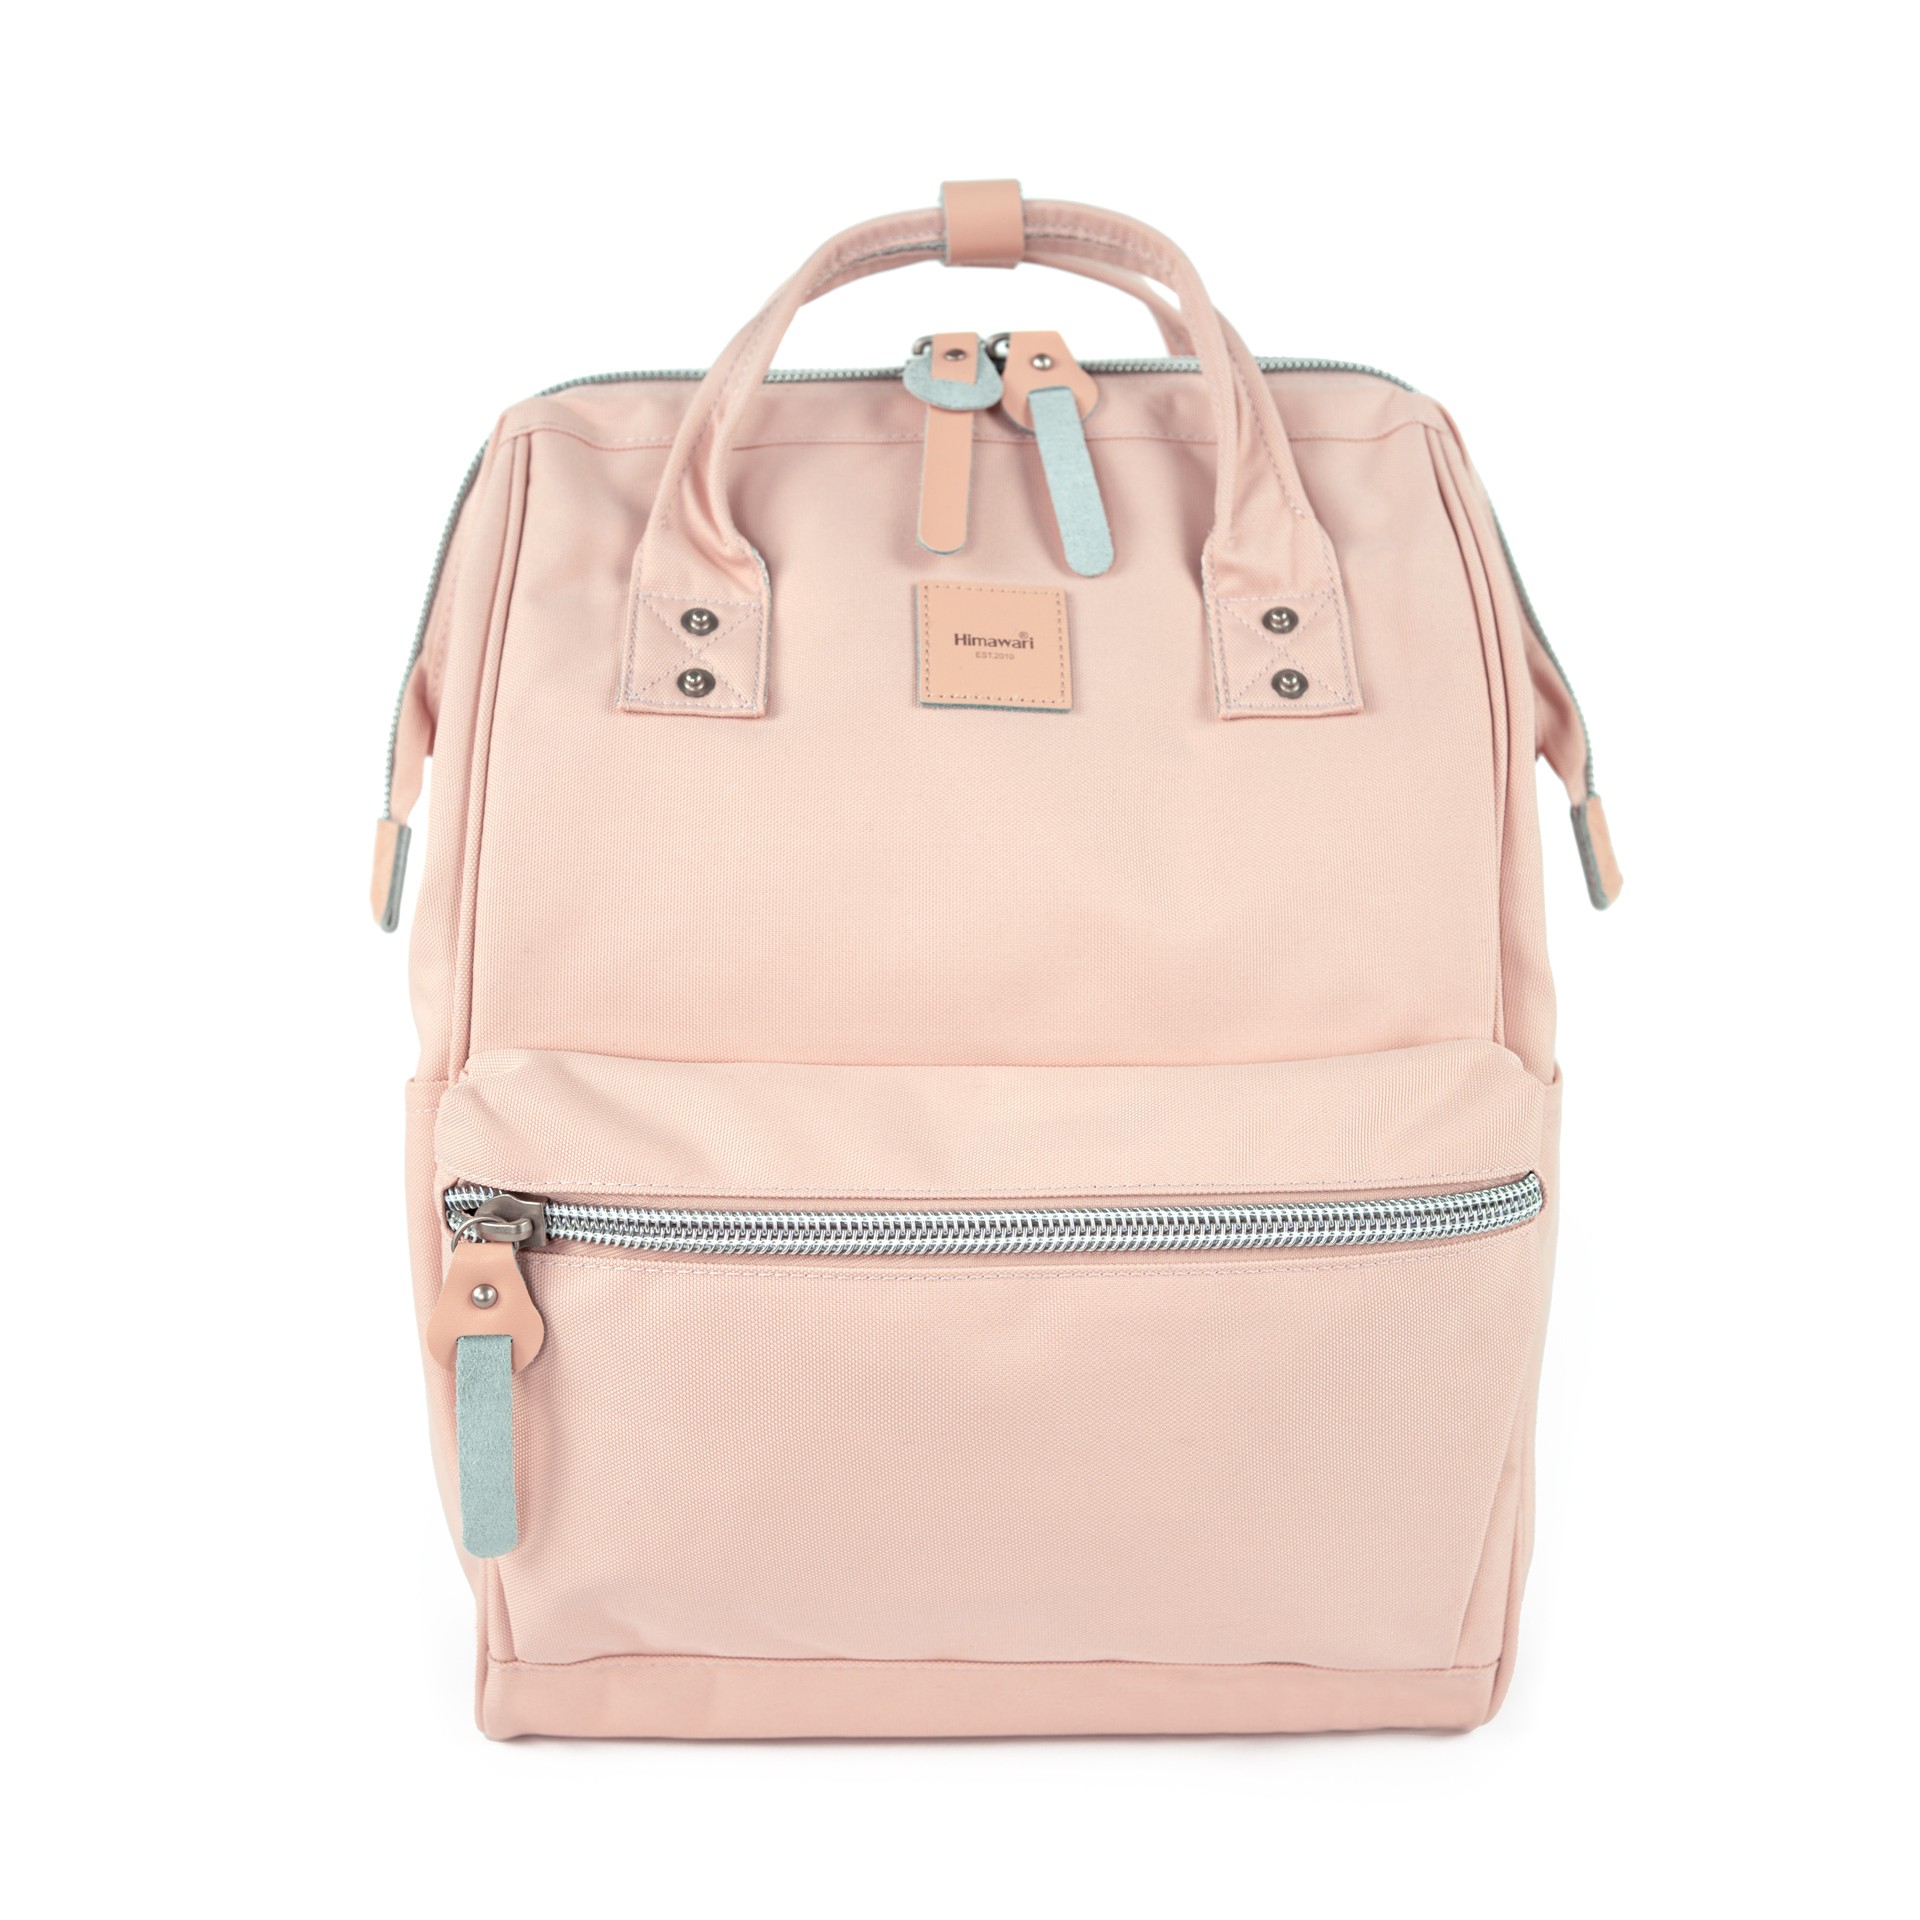 Levně Himawari Unisex's Backpack Tr22254